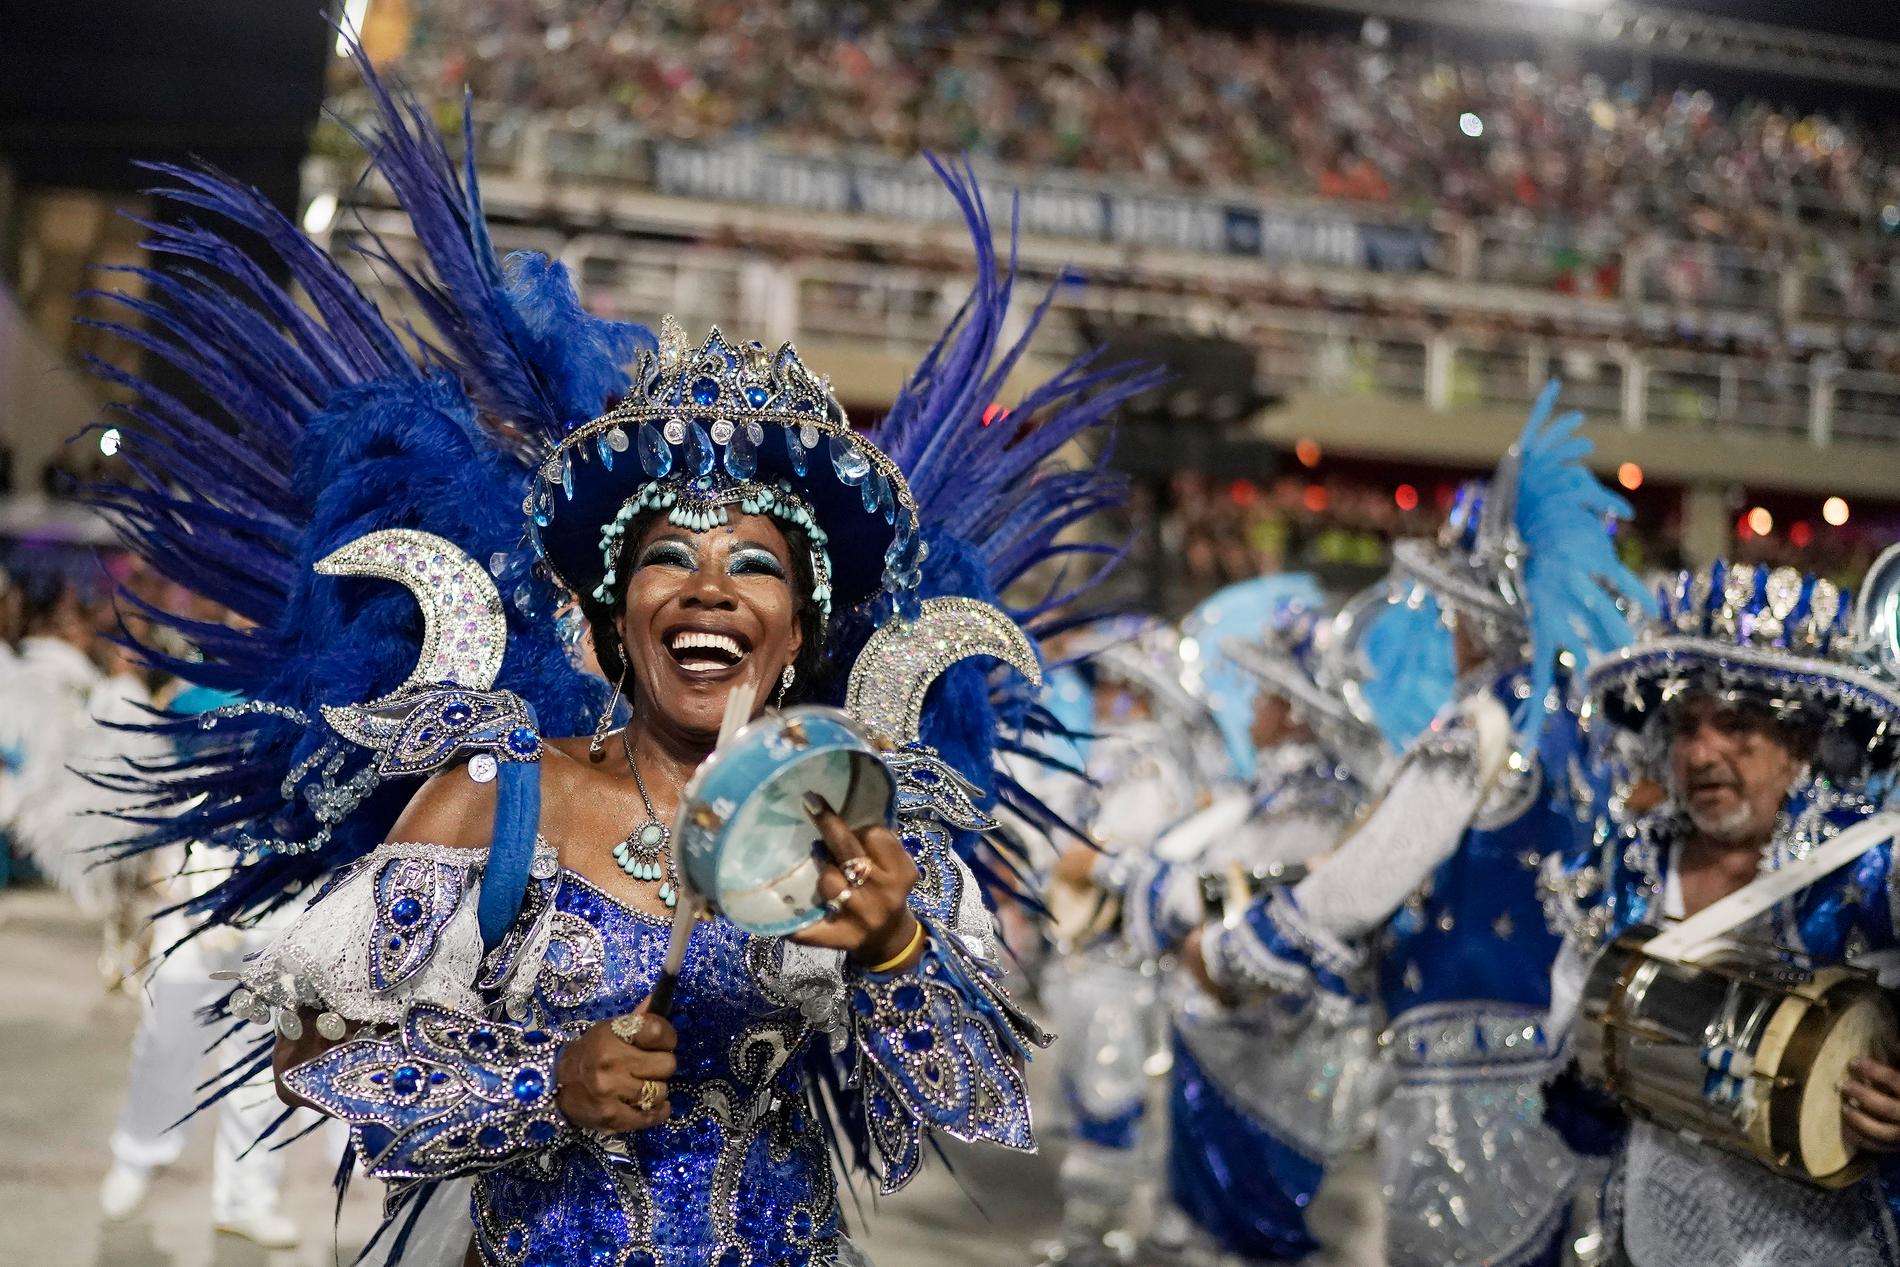 Karnevalen i Rio de Janeiro i Brasilien flyttas fram till april på grund av pandemin. Bilden är från karnevalen i februari 2020.